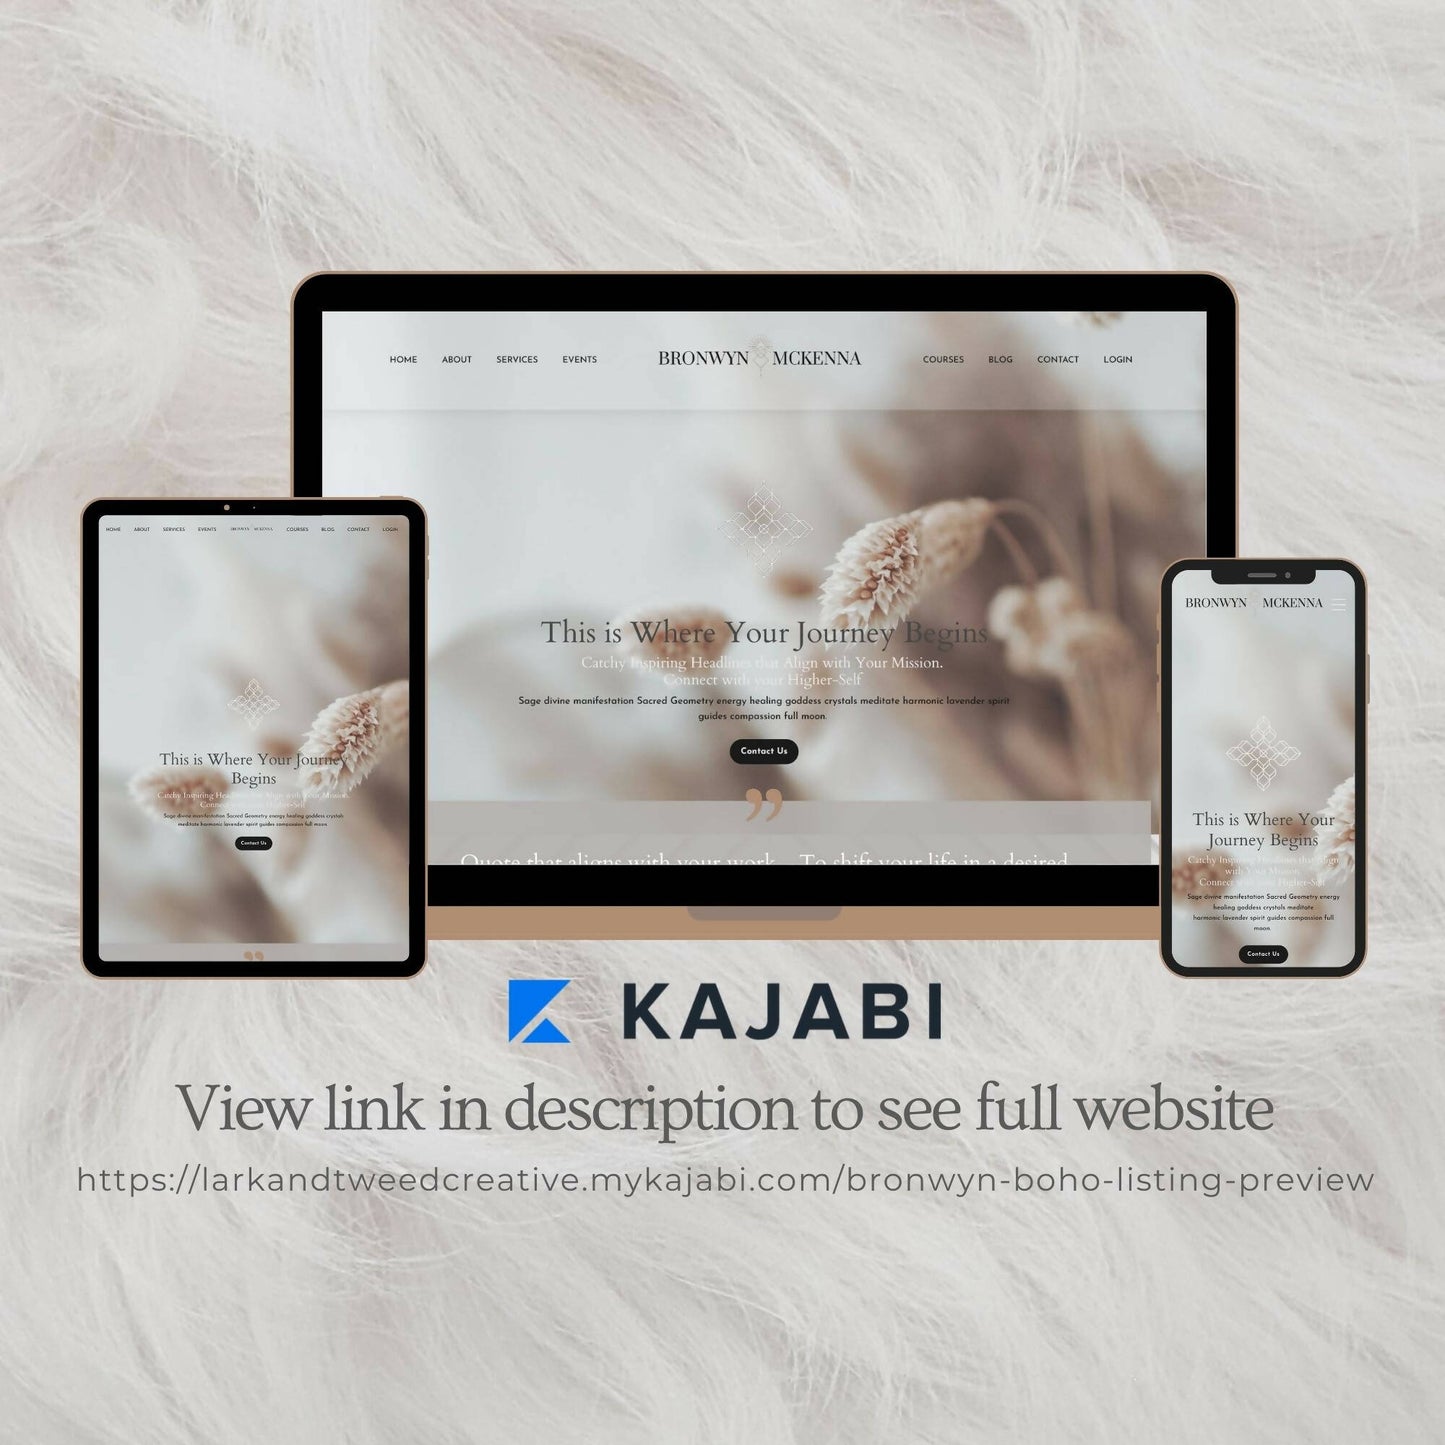 kajabi-website-template-coach-course-creator09